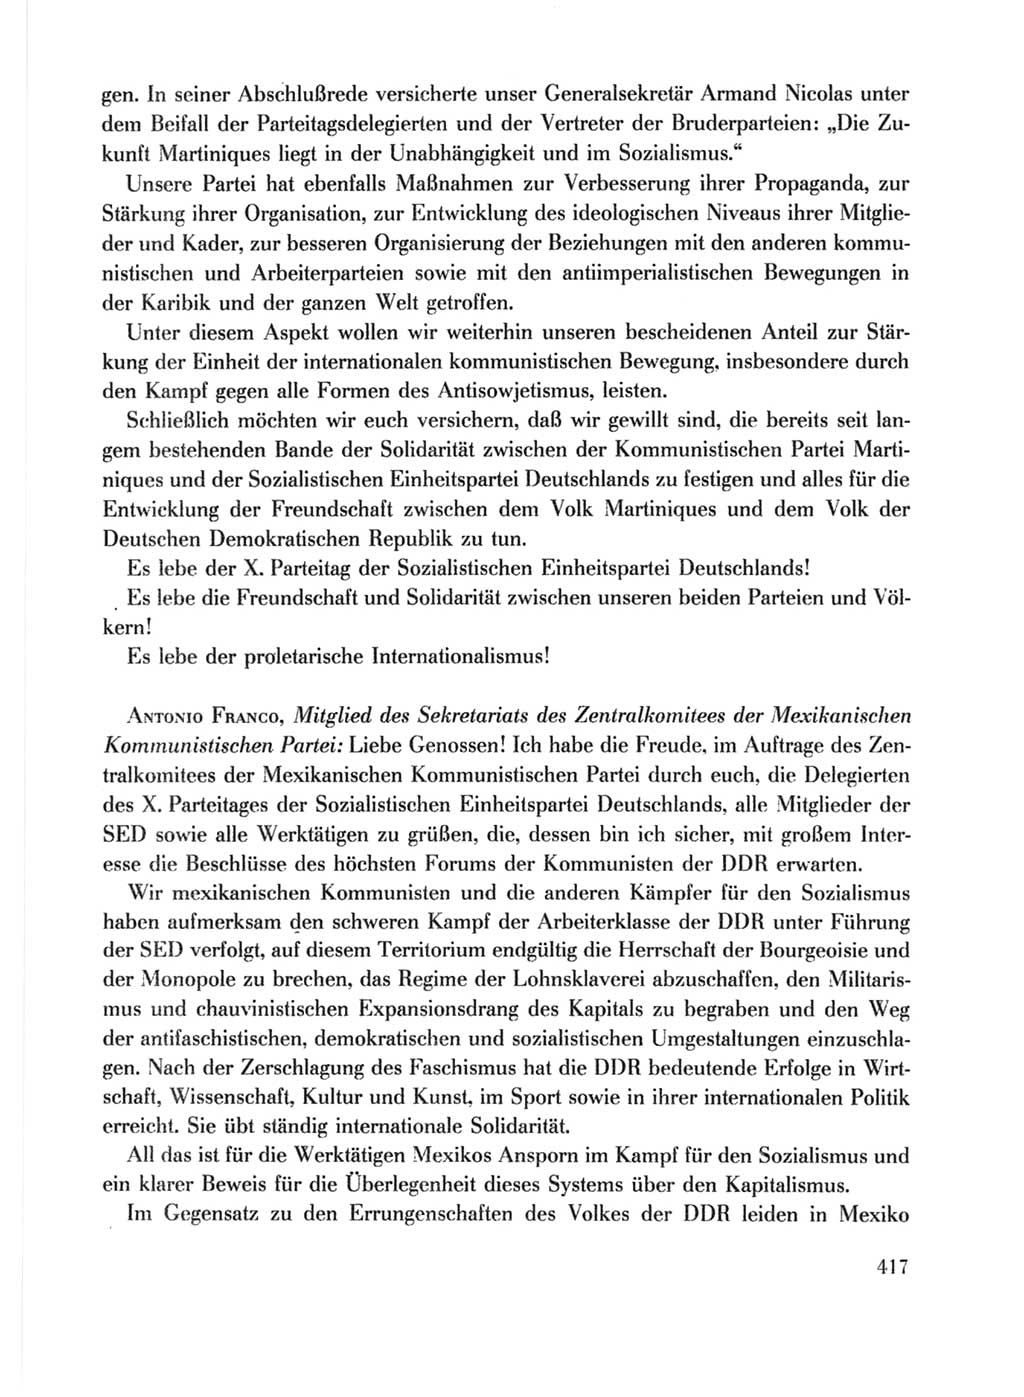 Protokoll der Verhandlungen des Ⅹ. Parteitages der Sozialistischen Einheitspartei Deutschlands (SED) [Deutsche Demokratische Republik (DDR)] 1981, Band 1, Seite 417 (Prot. Verh. Ⅹ. PT SED DDR 1981, Bd. 1, S. 417)